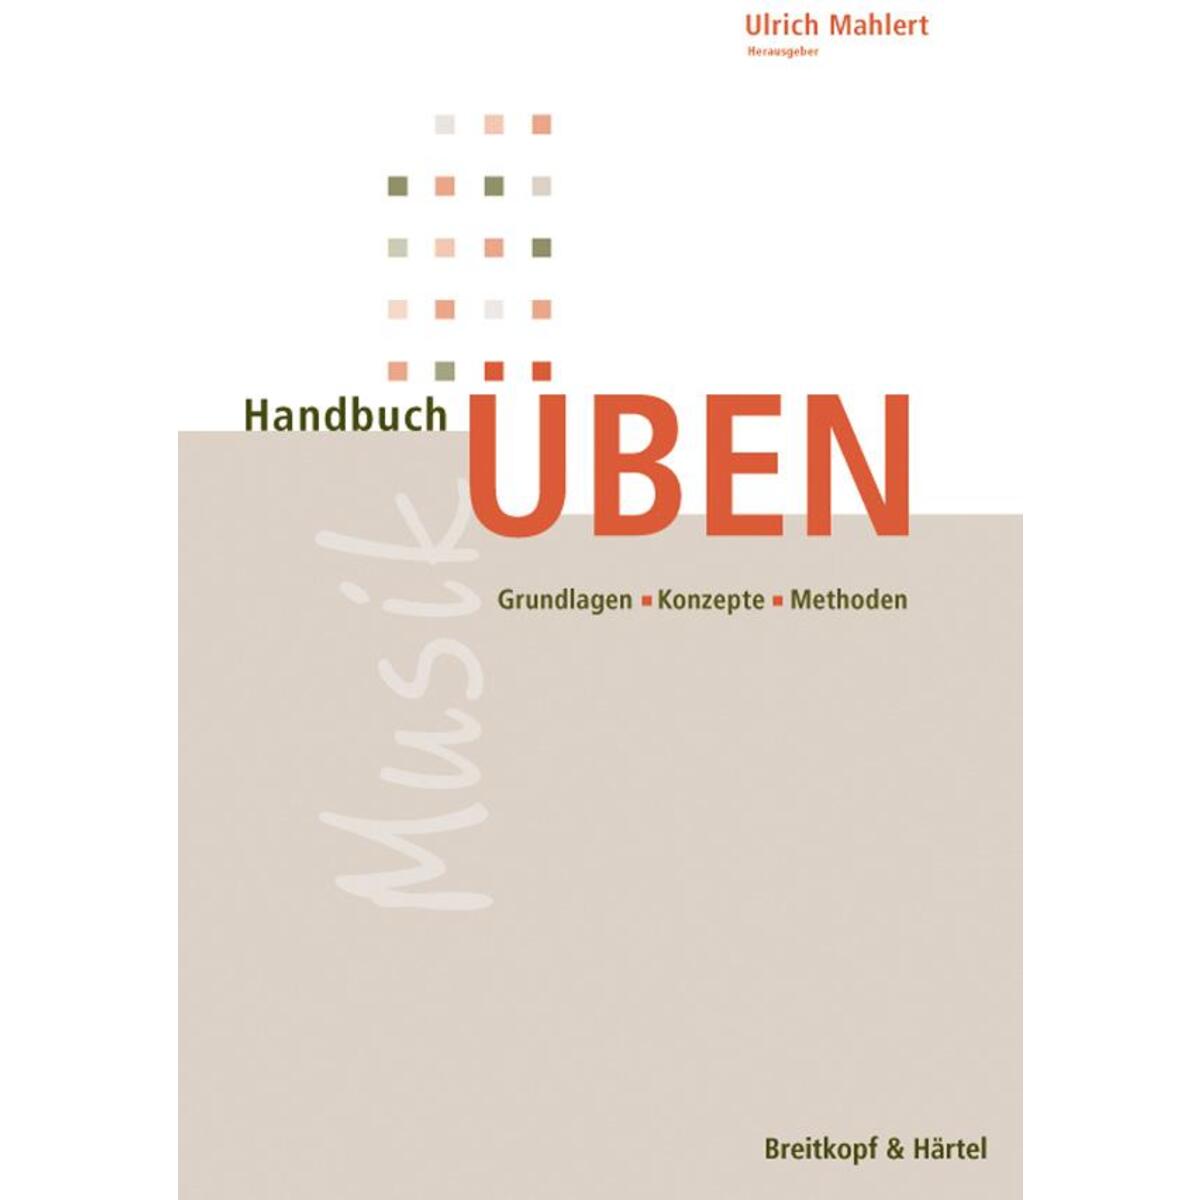 Handbuch Üben von Breitkopf & Härtel